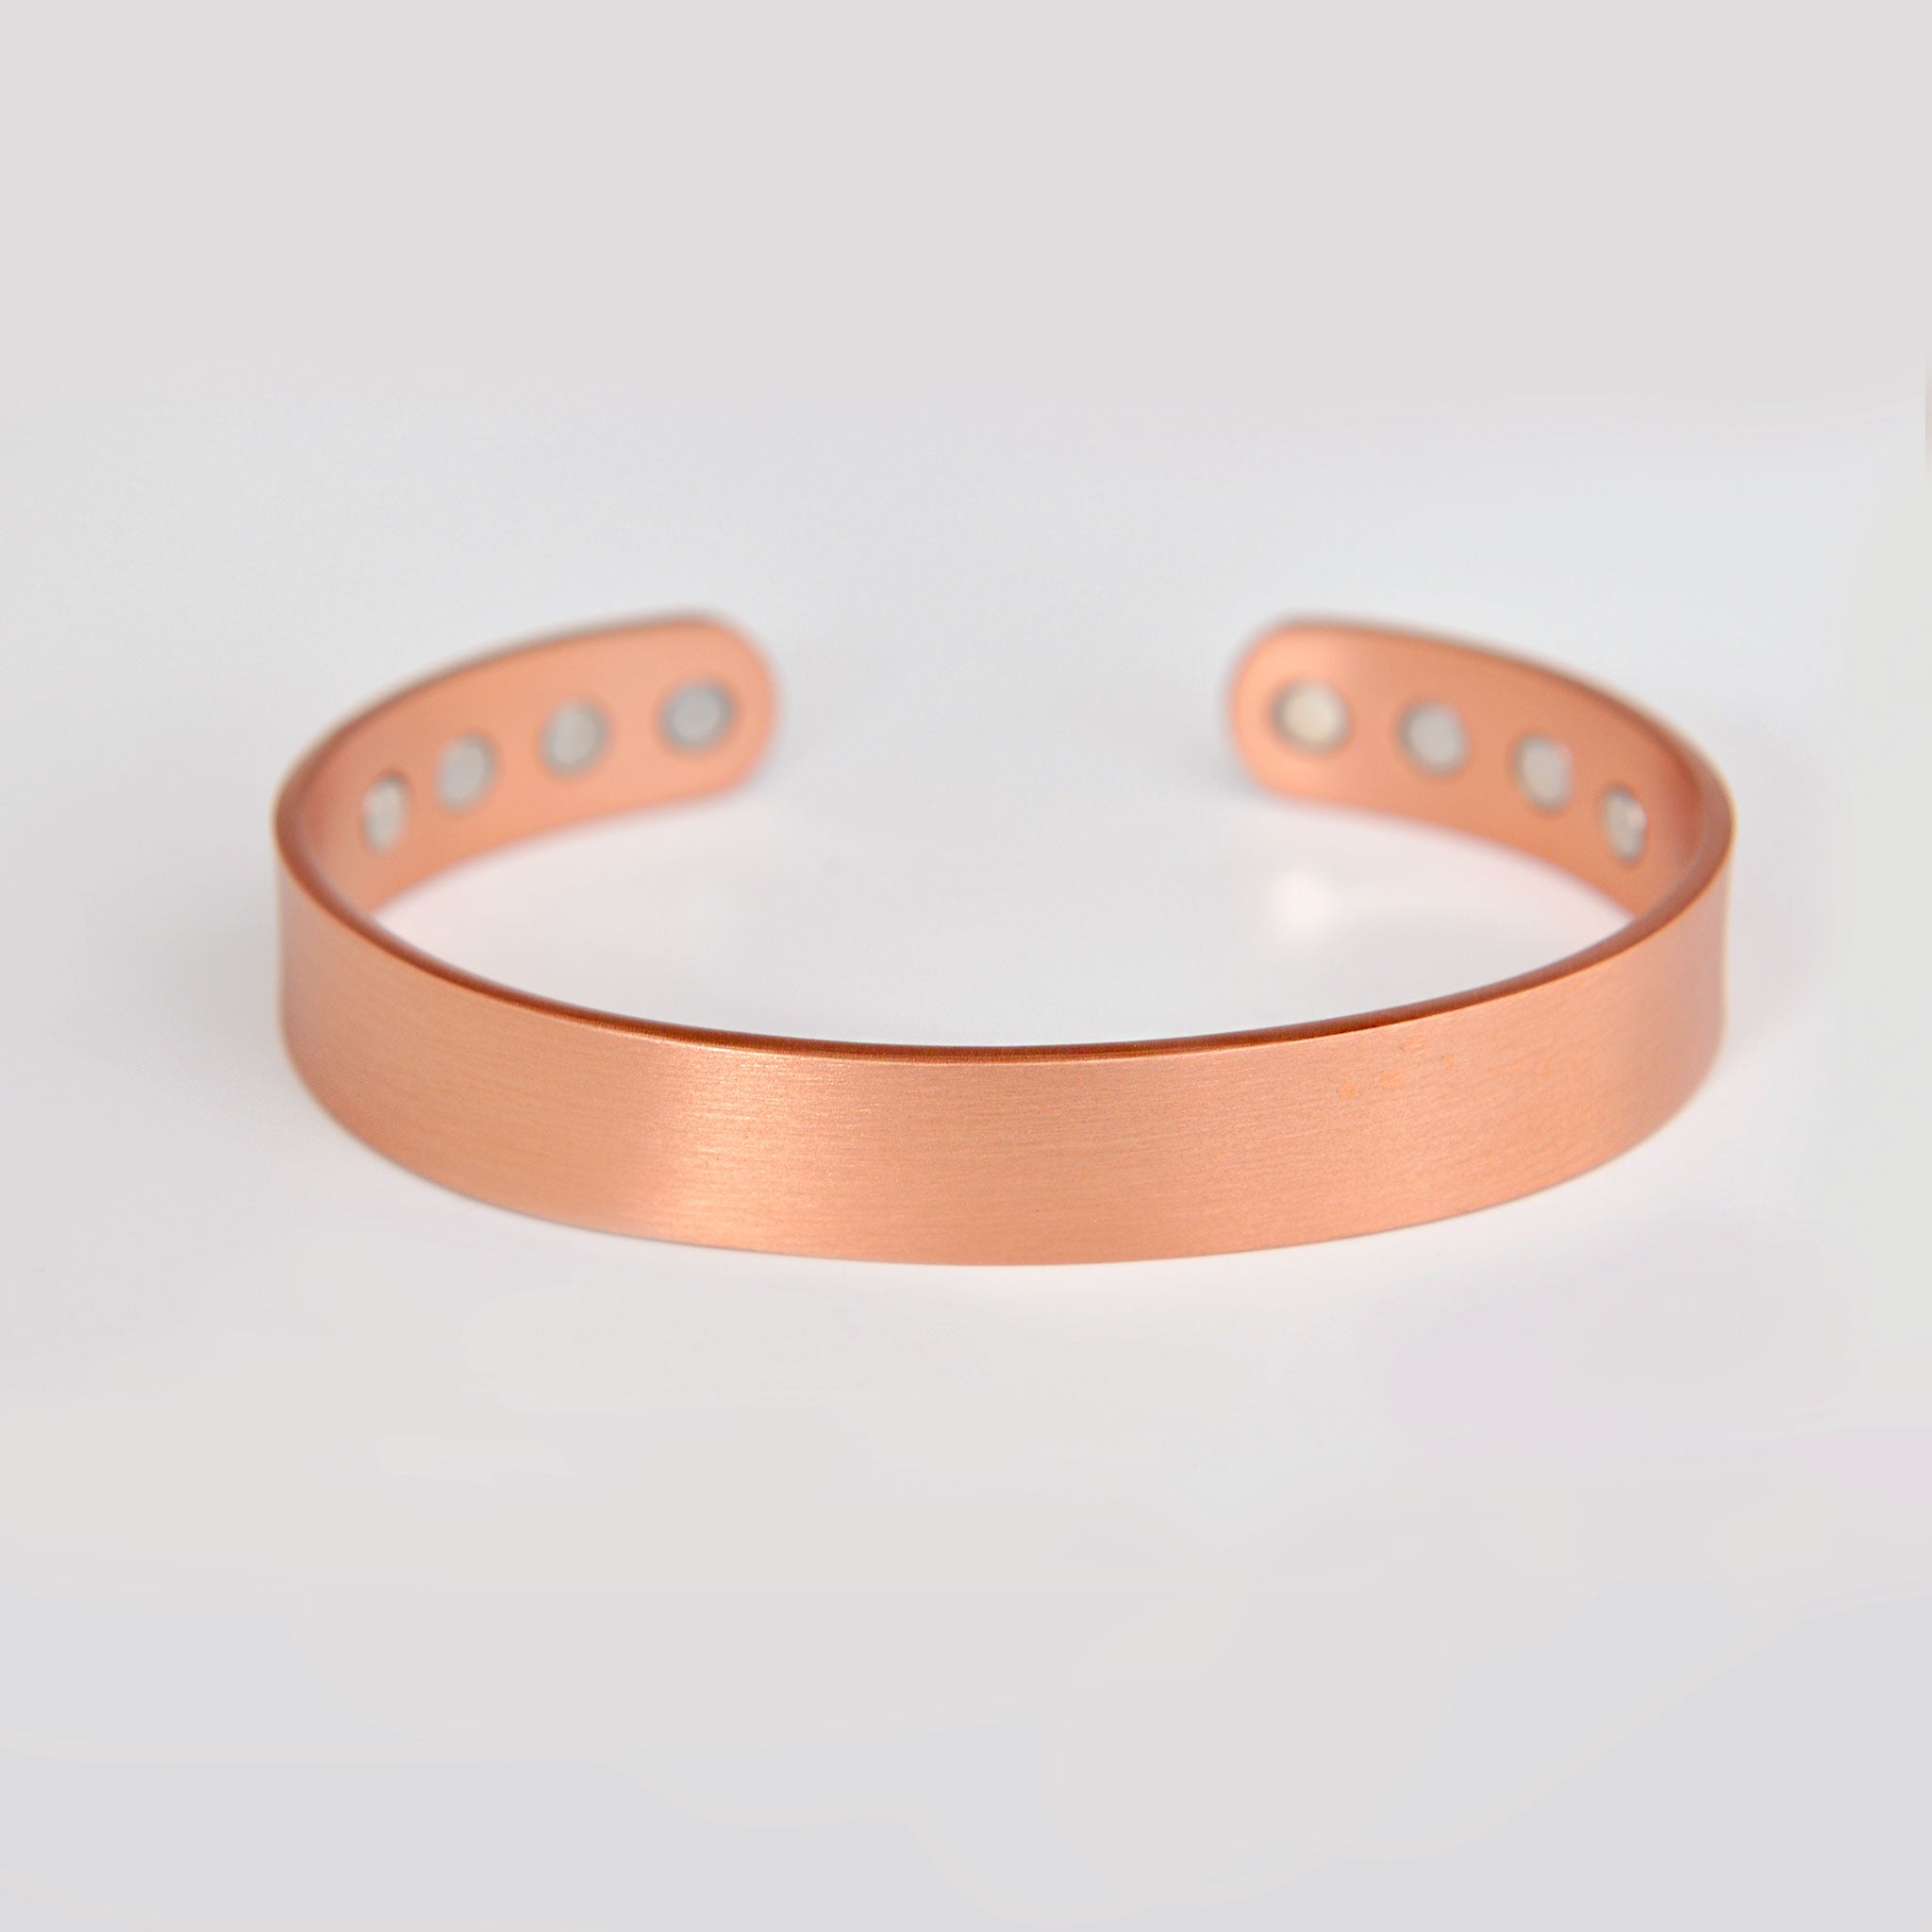 Copper bracelet for Arthritis